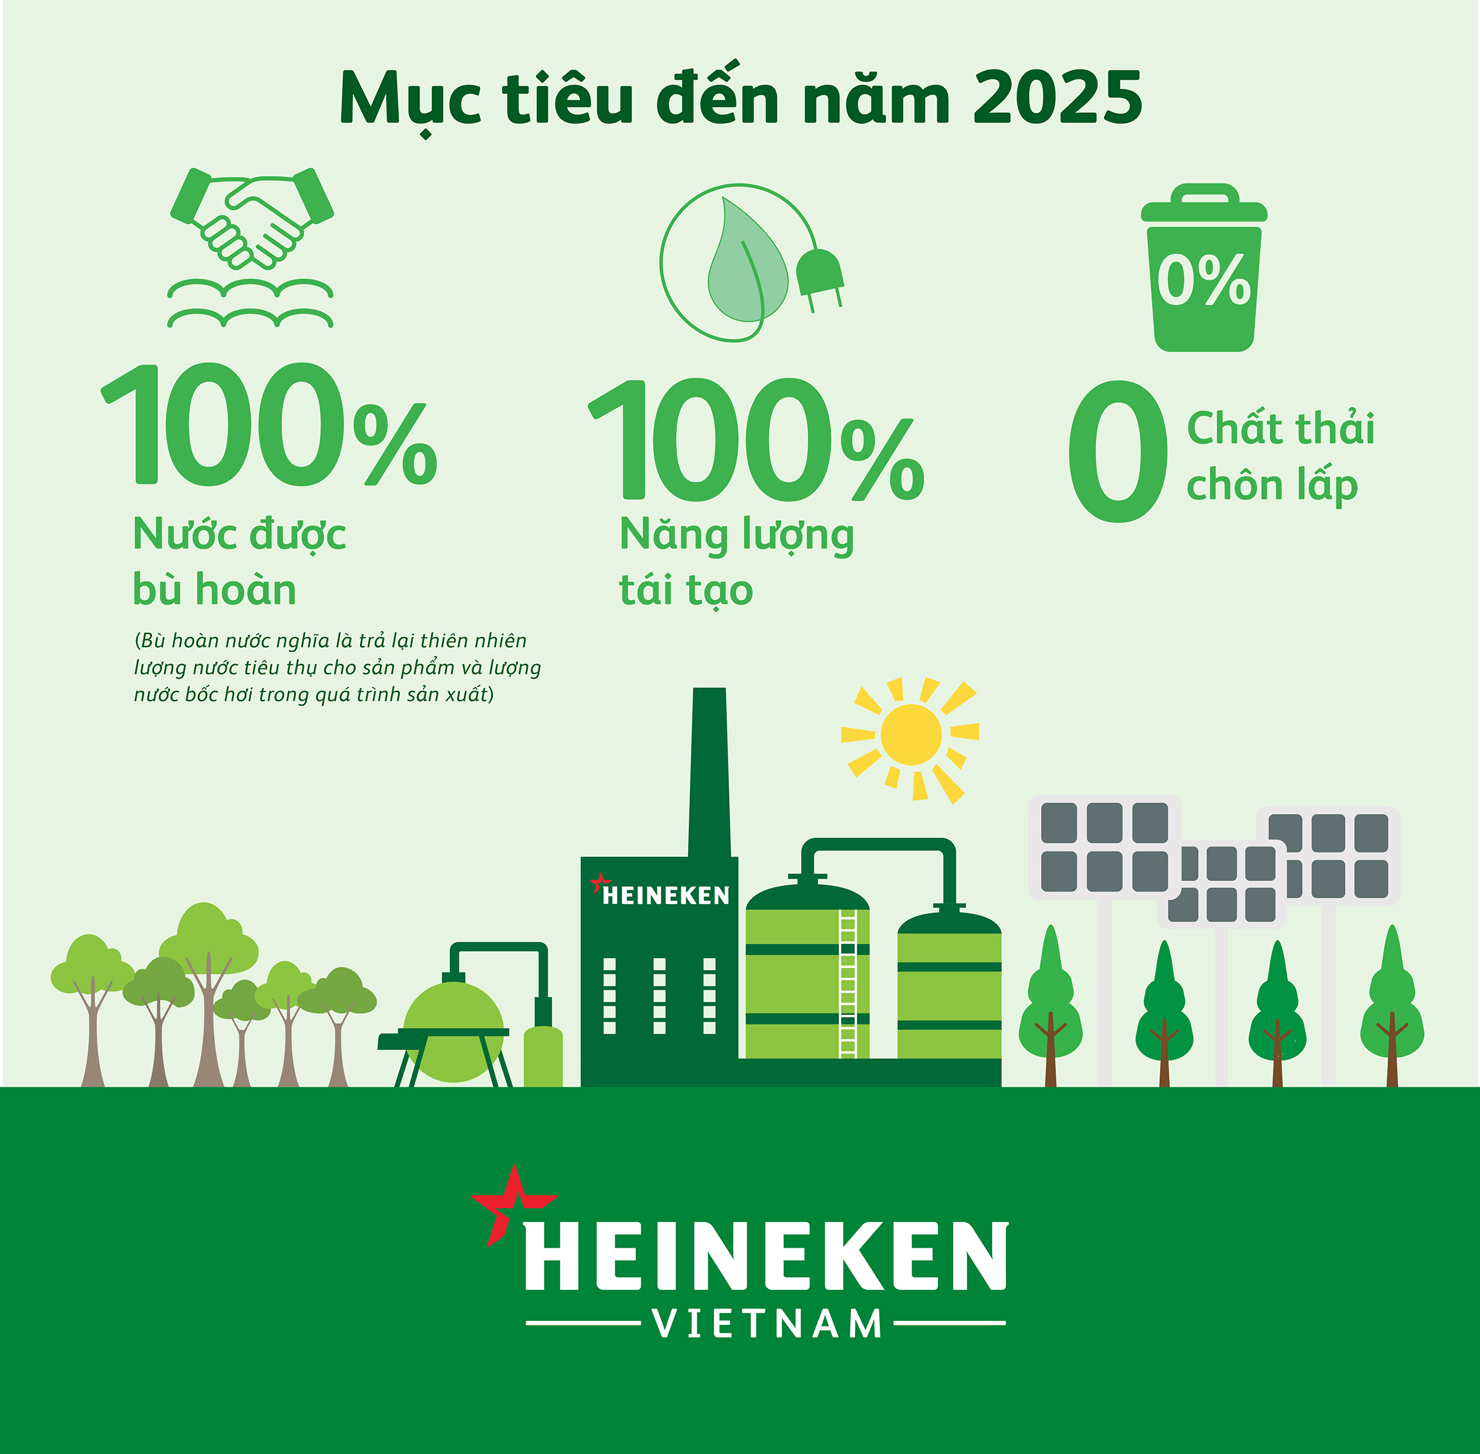 Đến năm 2025, Heineken Việt Nam tiến tới việc bù hoàn 100% nước sử dụng trong quá trình sản xuất, sử dụng 100% năng lượng tái tạo và 100% rác thải được tái chế, tái sử dụng .